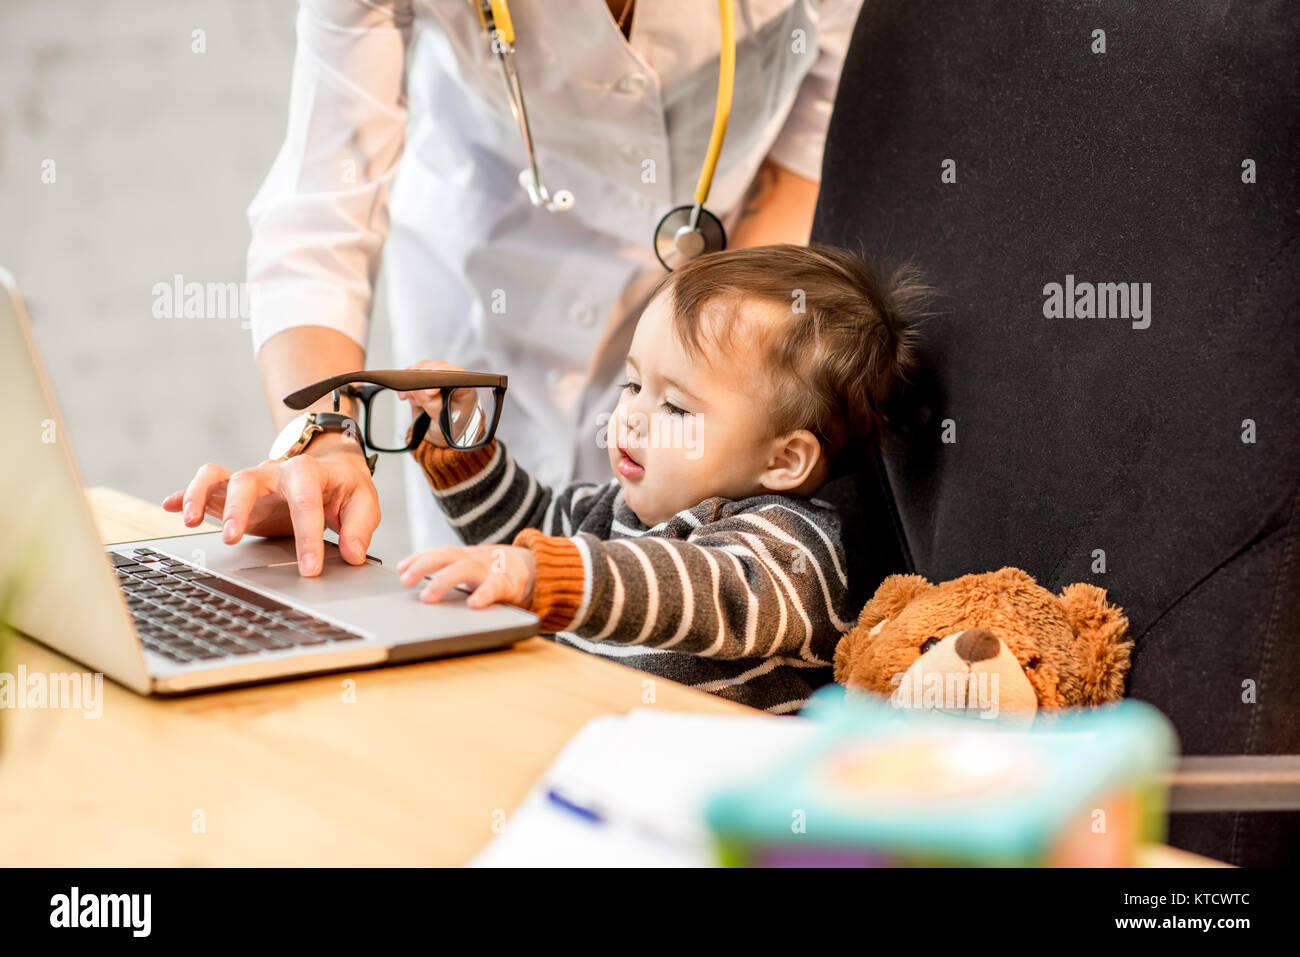 L'examen de l'infirmière de santé d'un bébé garçon jouant sur l'ordinateur portable dans le bureau Banque D'Images